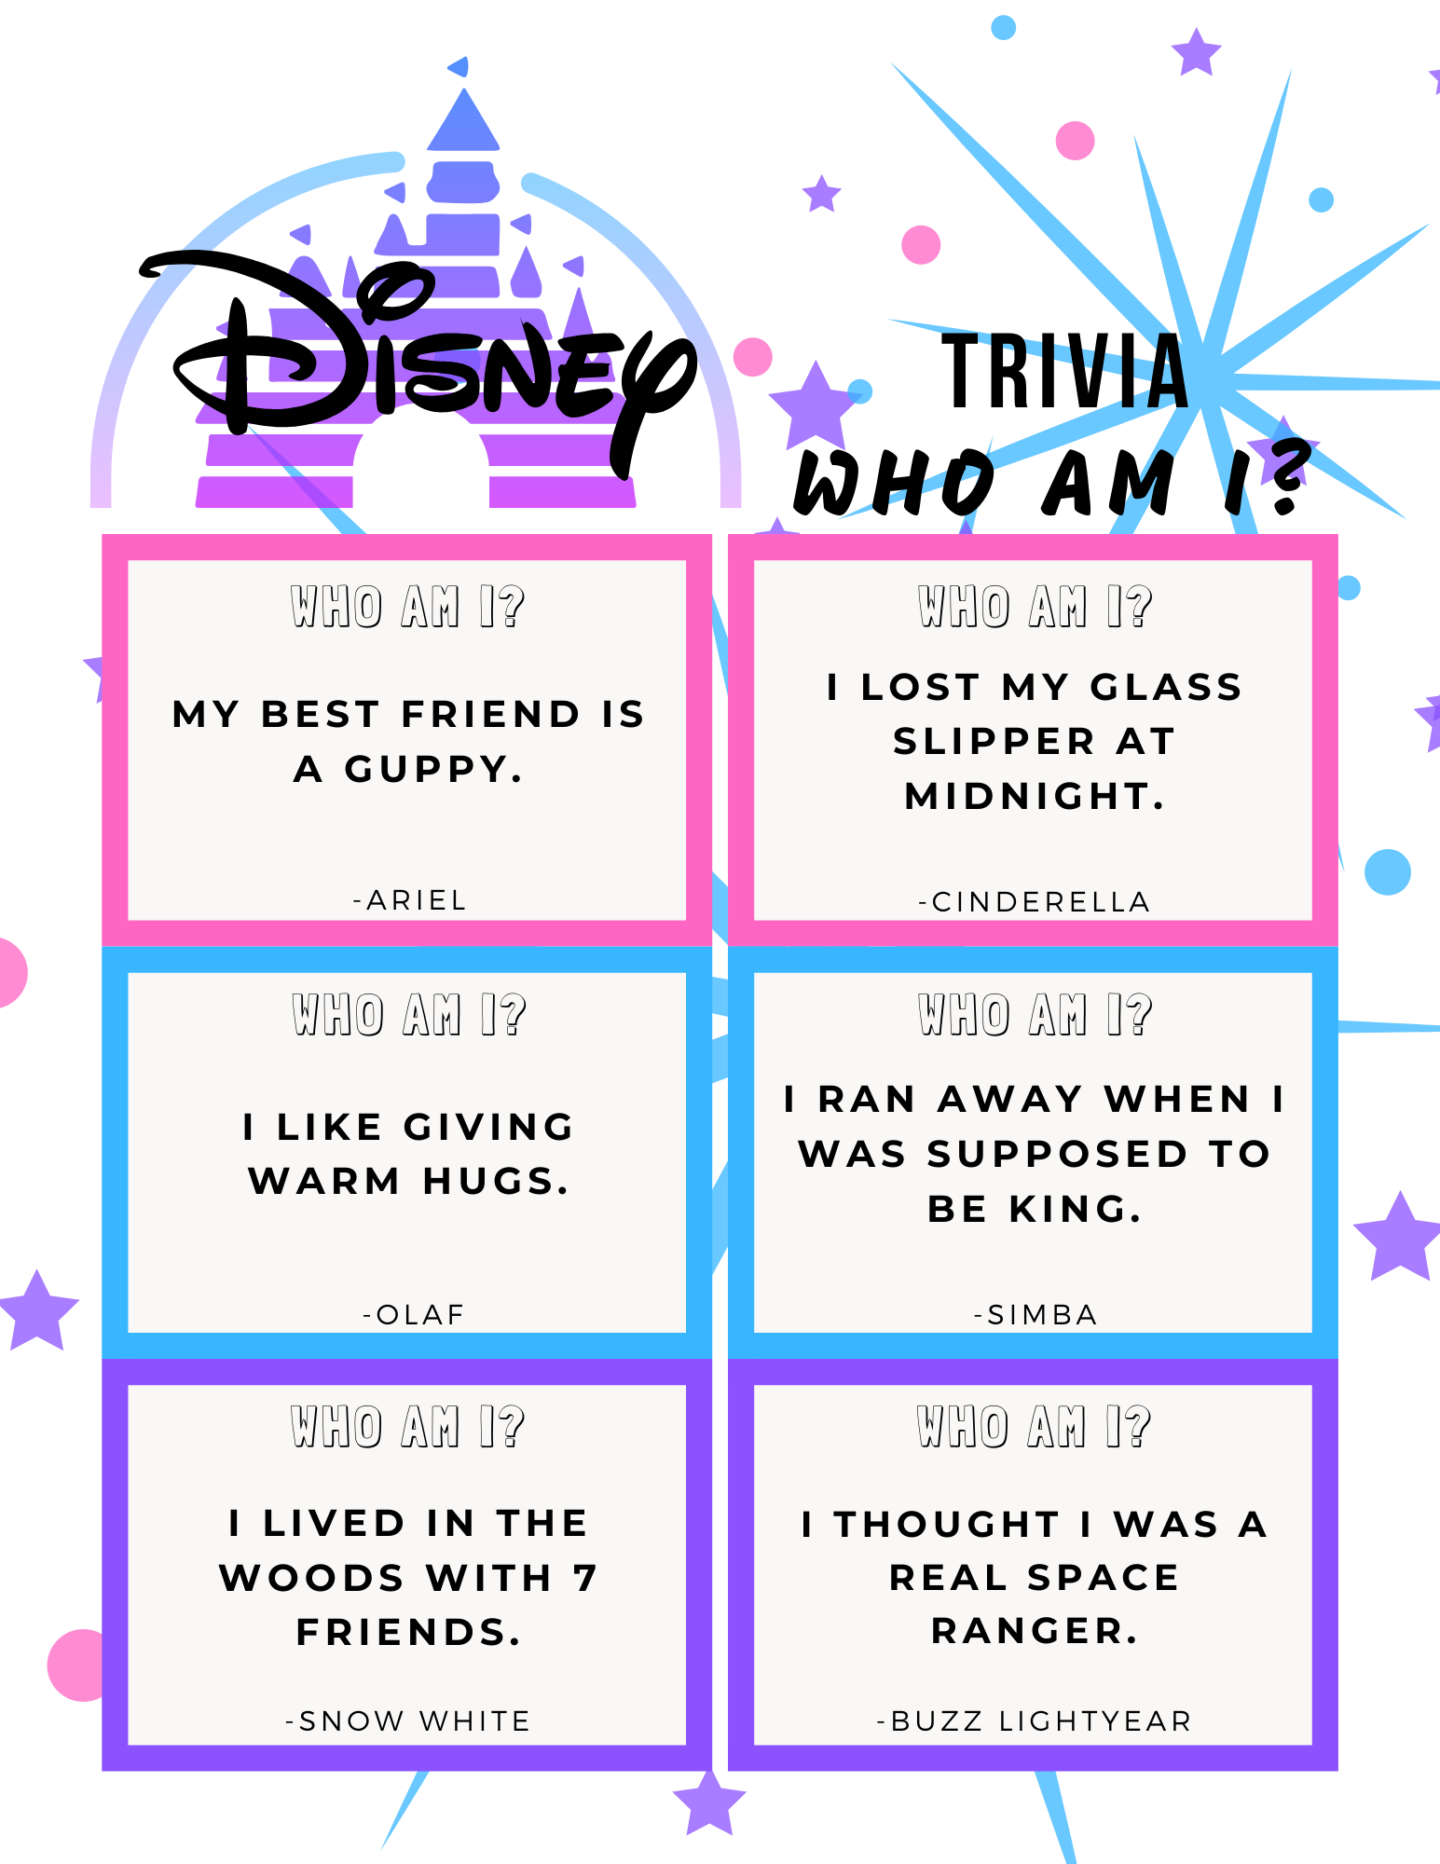 The Best Disney Trivia Quiz for True Fans 2023: Disney Trivia Questions